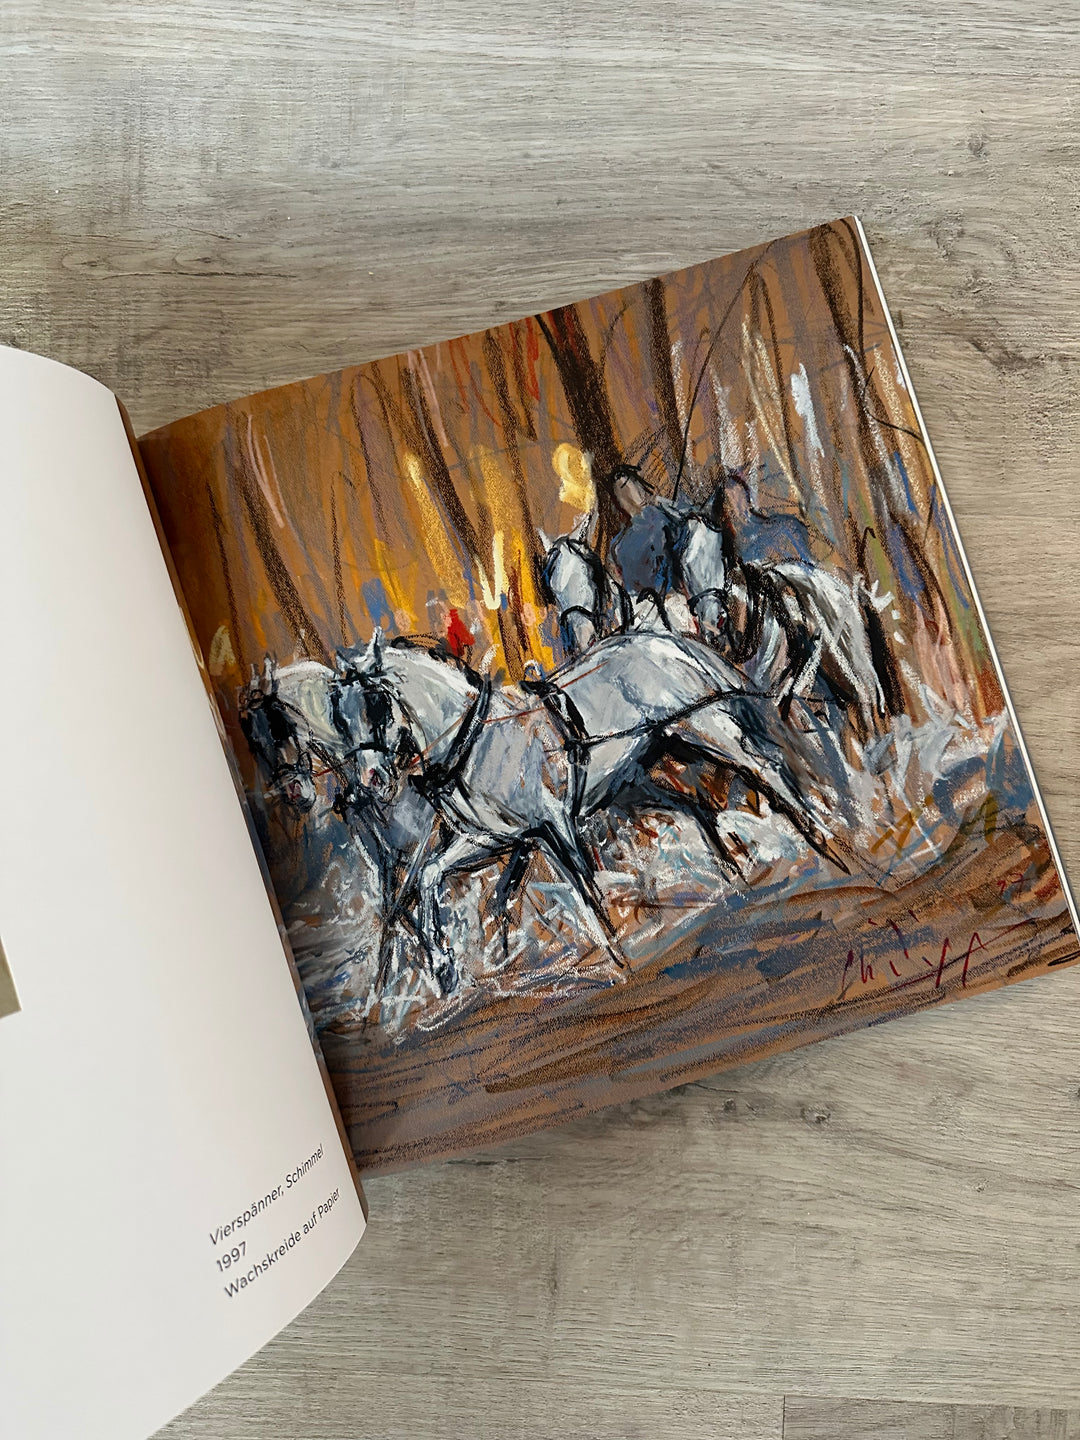 Klaus Philipp : Der Künstler - seine Pferde - sein Leben